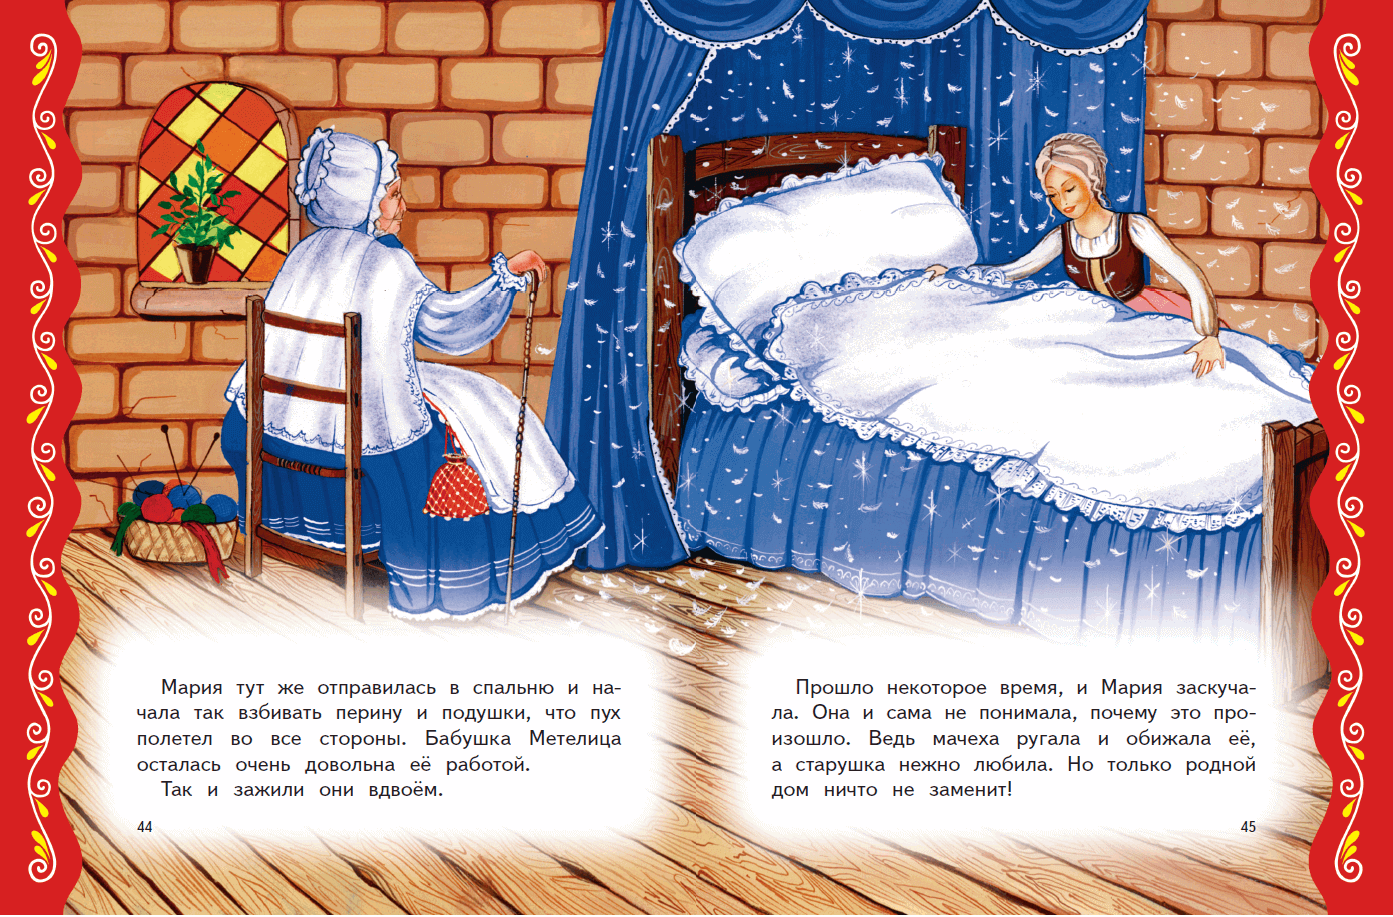 Сказка для сна детям 4 лет читать. Сказки на ночь для детей. Короткие сказки на ночь. Сказки на ночь небольшие для детей. Рассказы на ночь для детей.